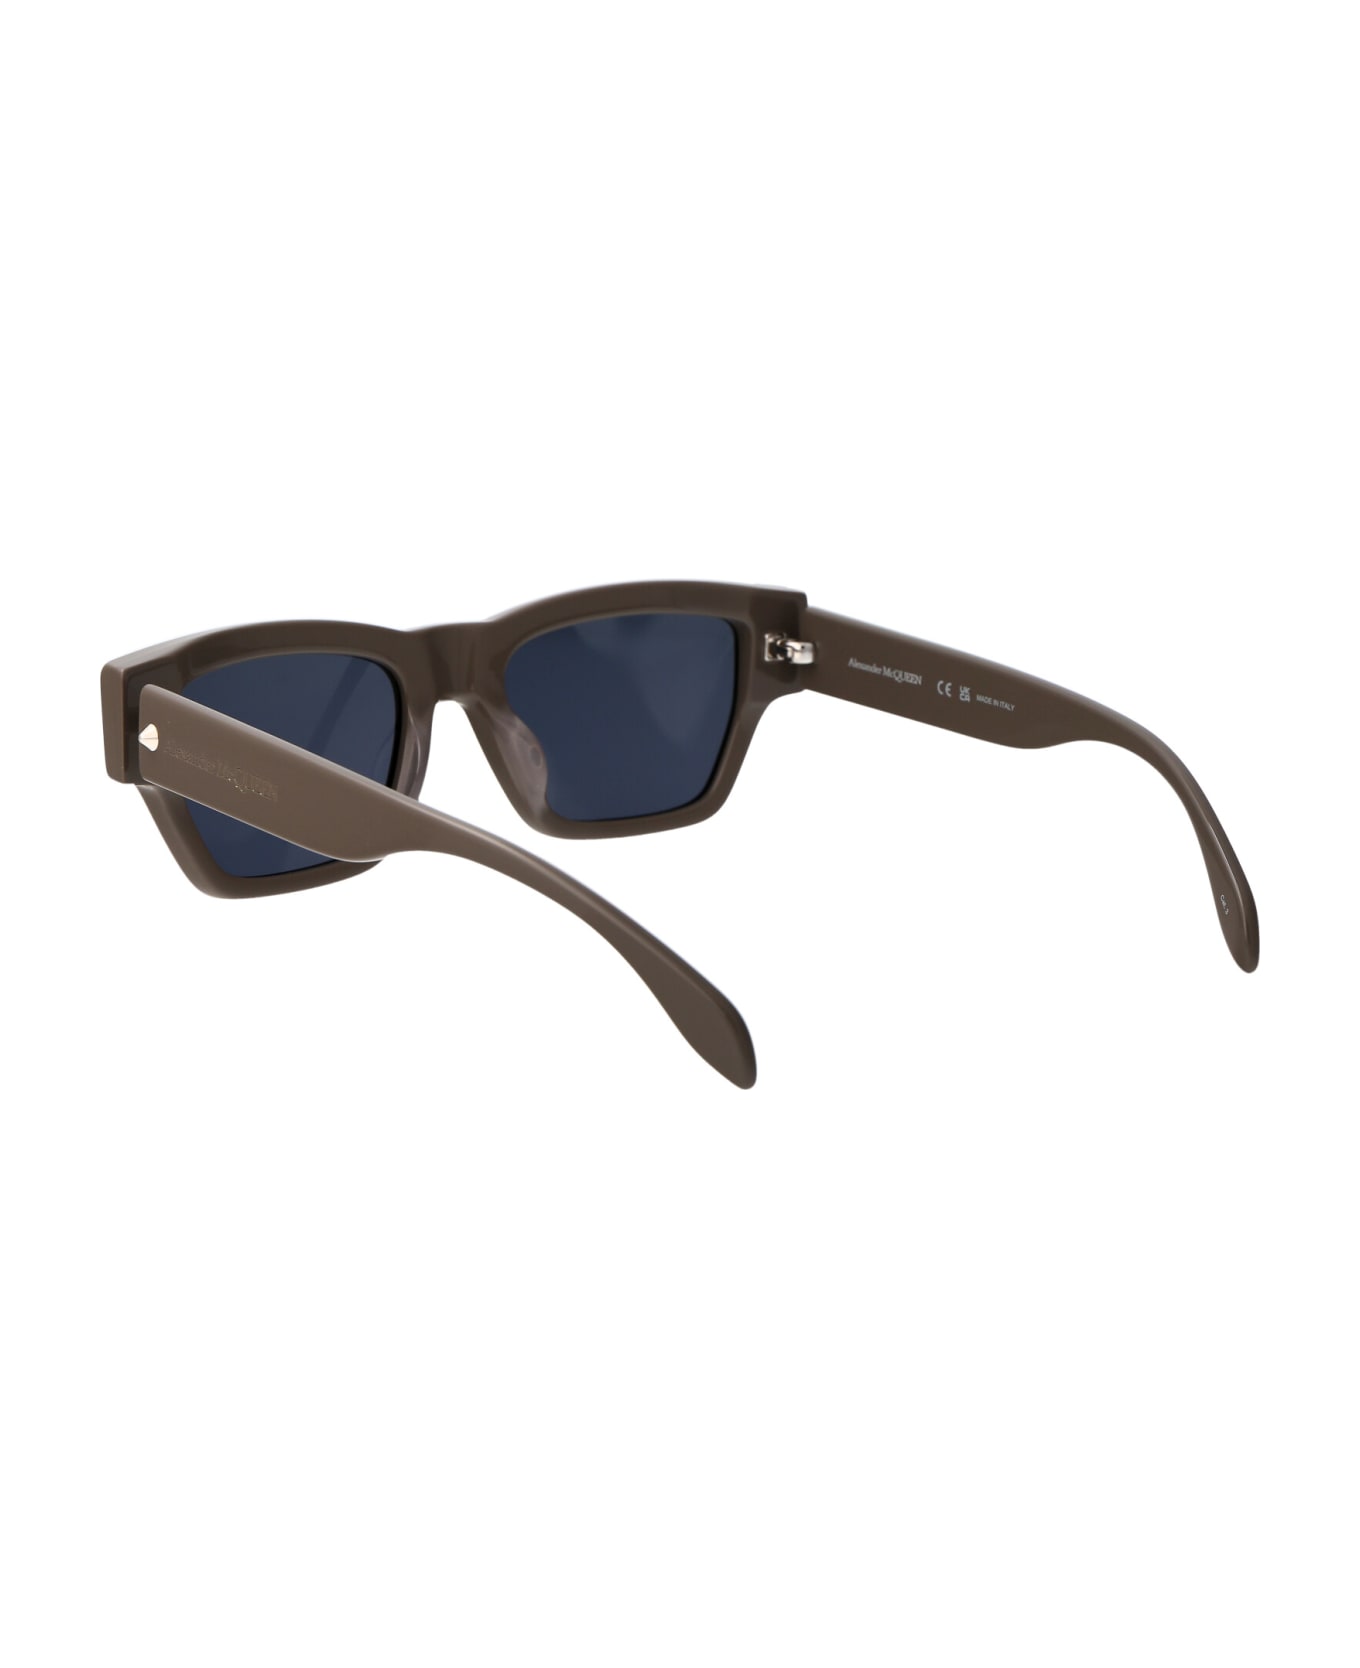 Alexander McQueen Eyewear Am0409s Sunglasses - 003 Già disponibile su SVD larticolo sunglass&case Z6 di